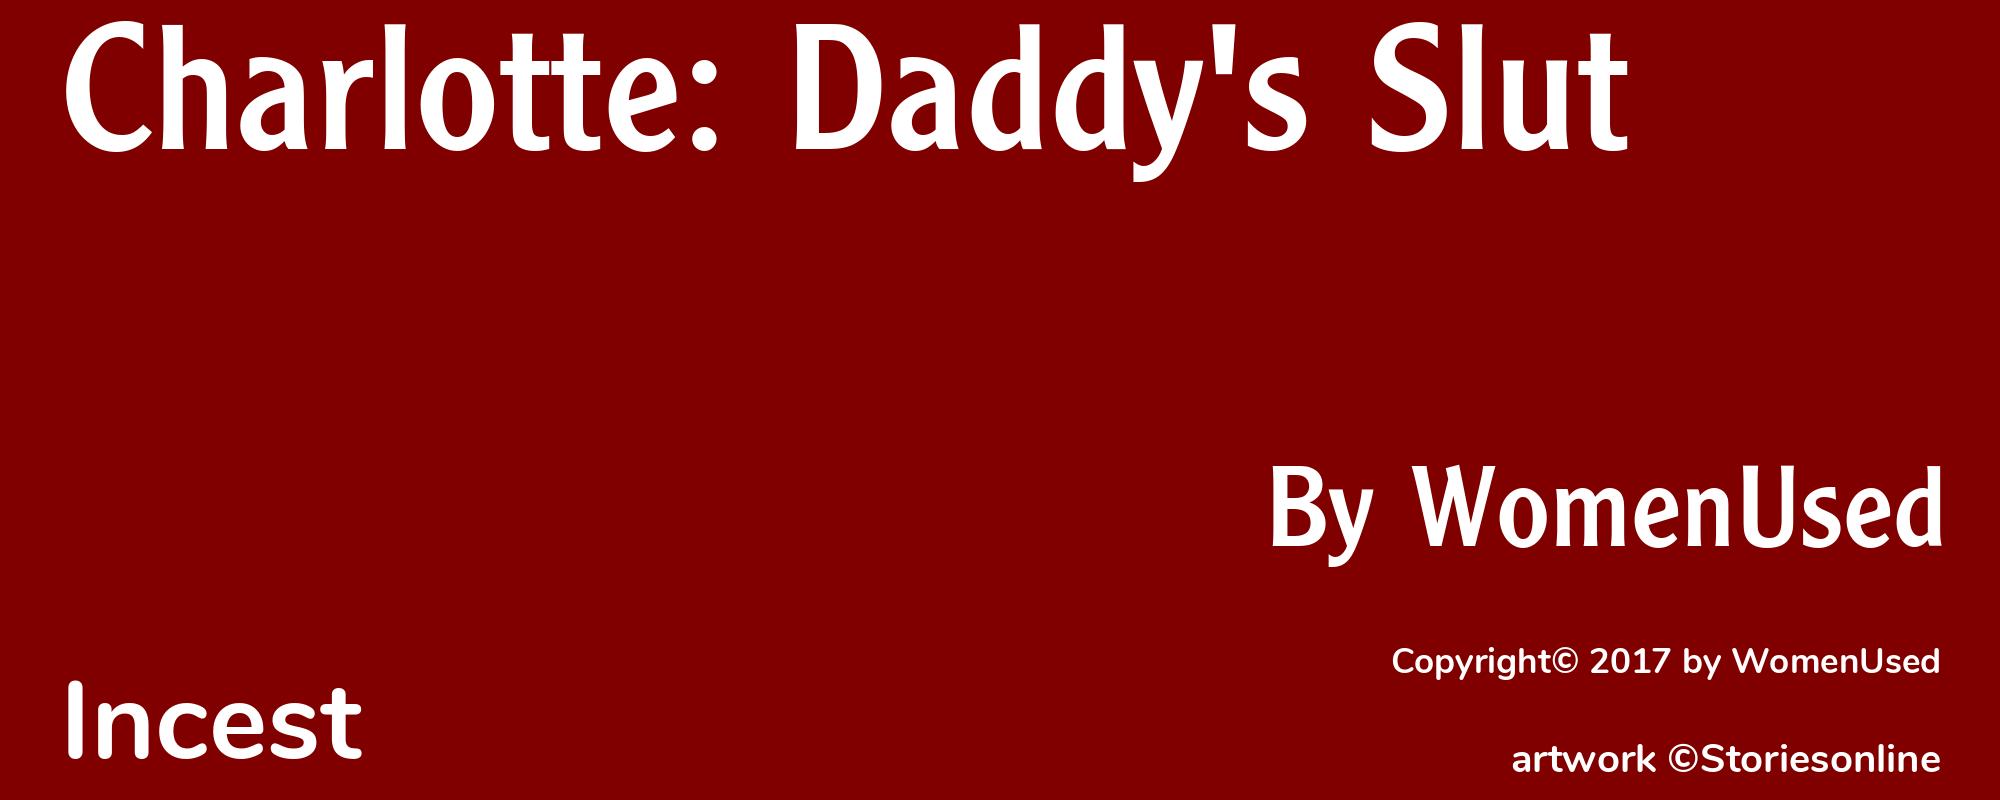 Charlotte: Daddy's Slut - Cover